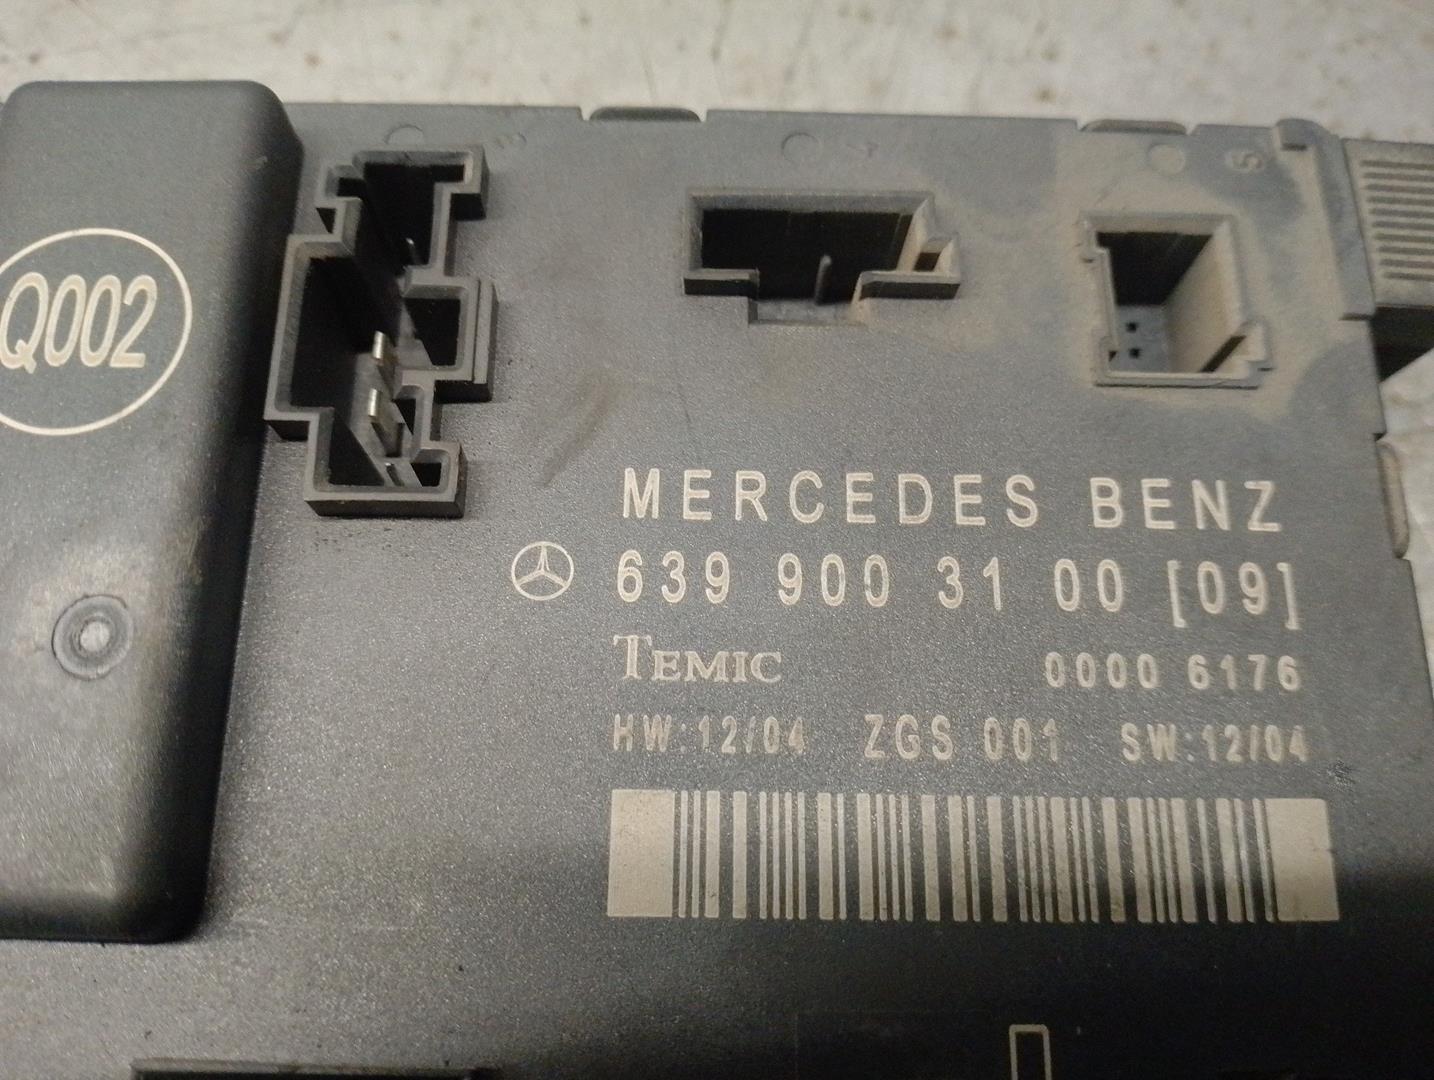 MERCEDES-BENZ Vito W639 (2003-2015) Citau veidu vadības bloki 639900310009, 00006176, TEMIC 24206361